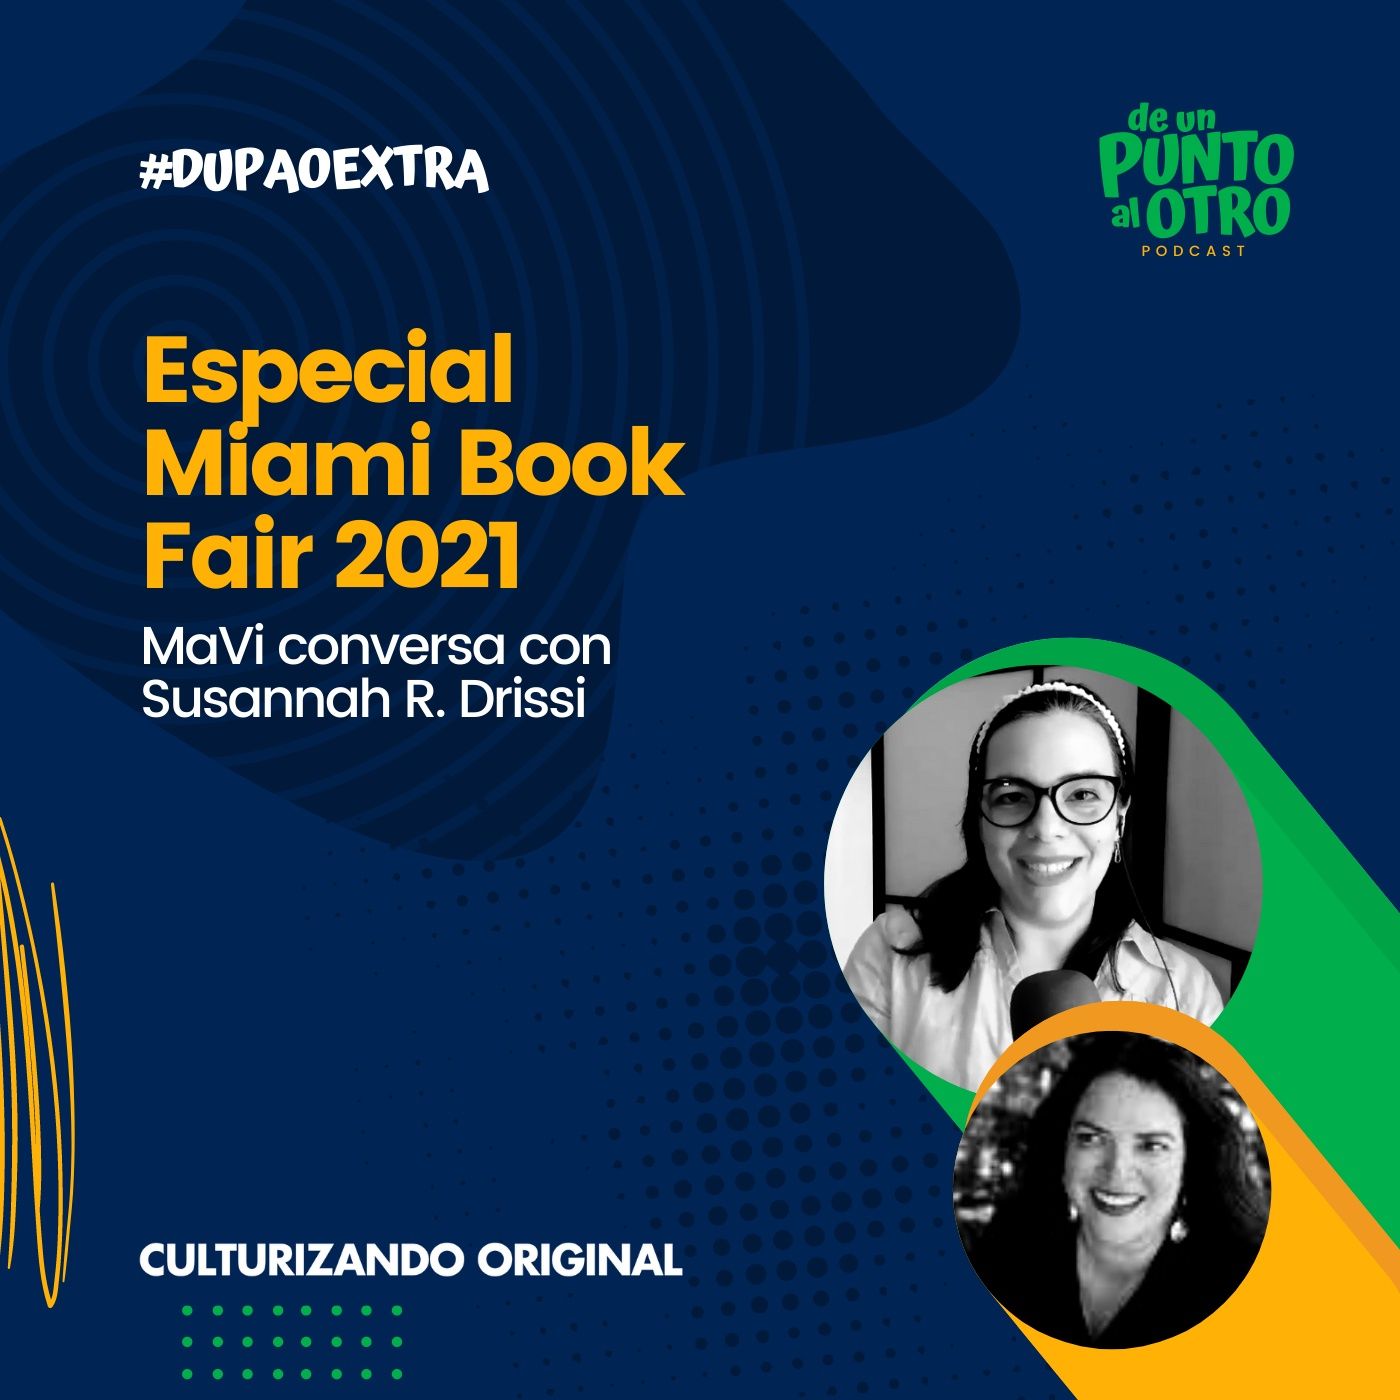 Extra 09 • Especial Miami Book Fair, con Susannah R. Drissi • De un punto al otro • DUPAO.NEWS